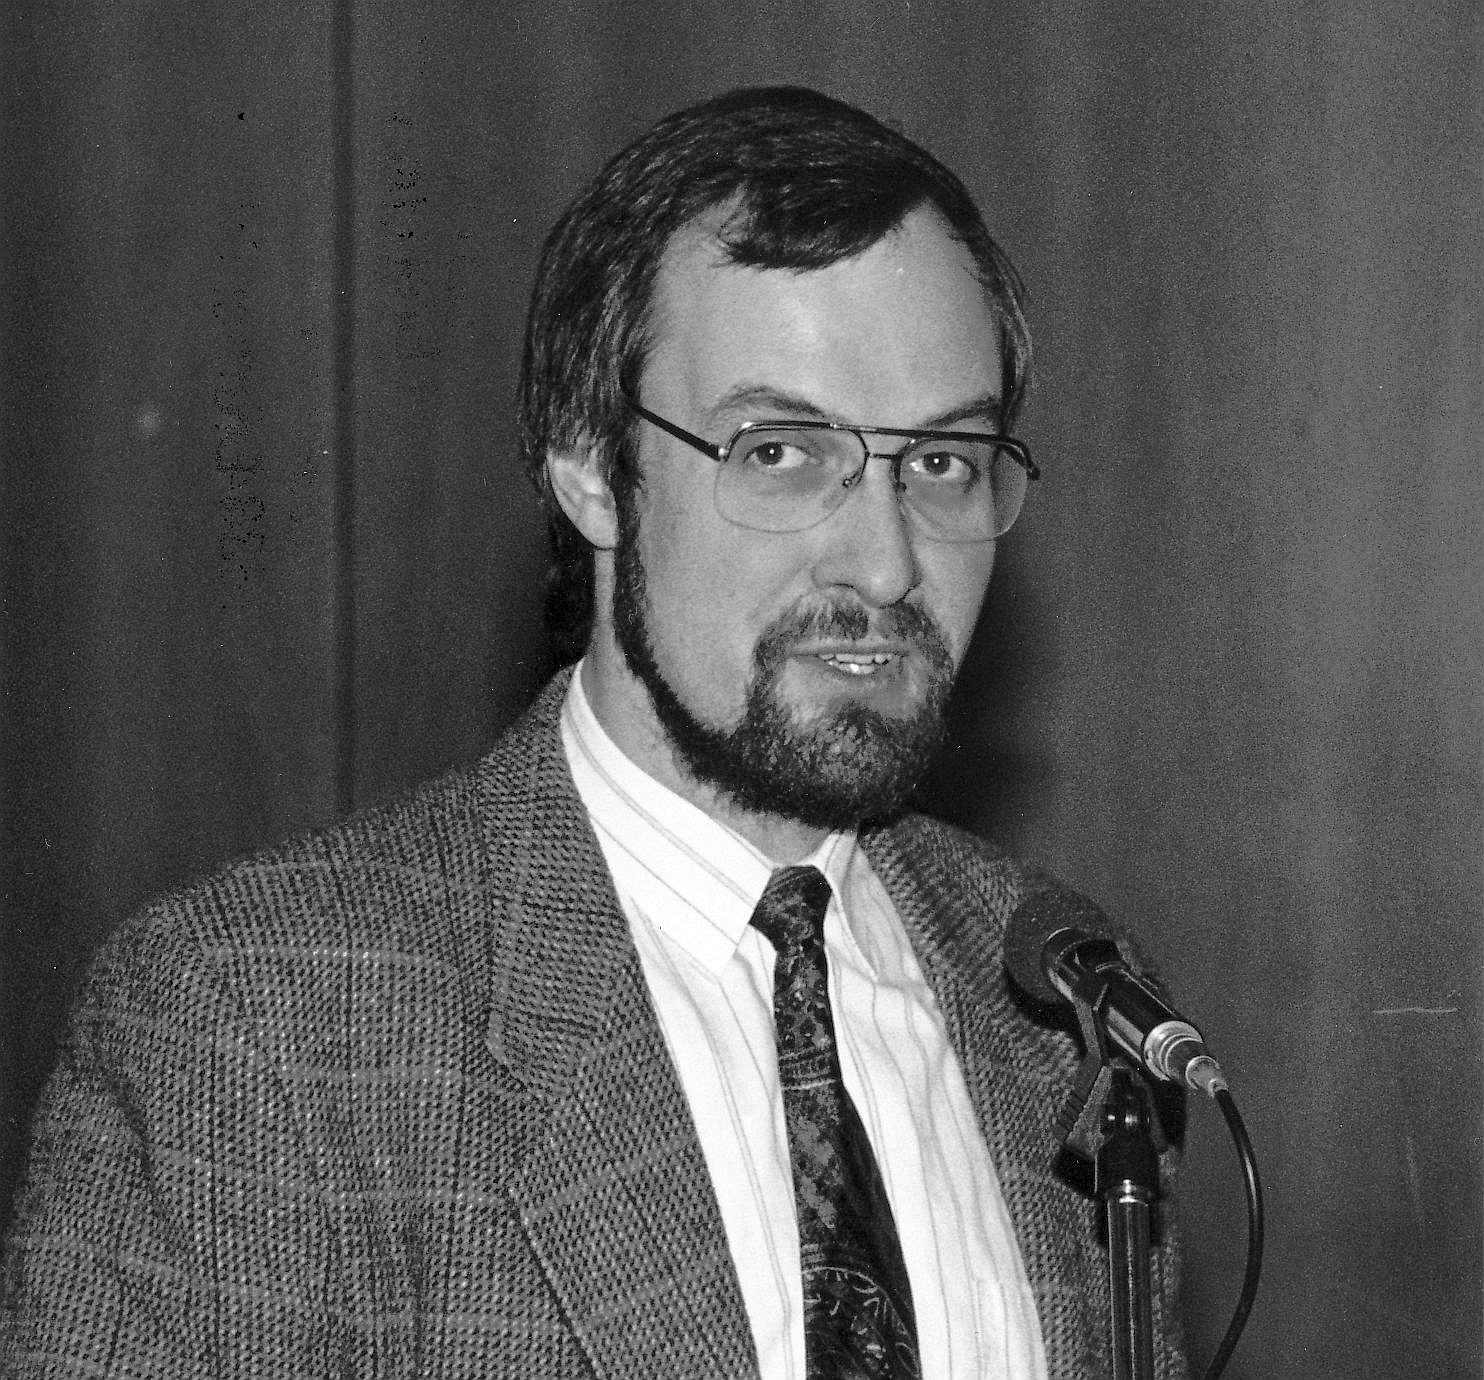 Jürgen Gutowski bei seiner Wahl zum Konrektor 1995. Er steht am Mikrofon, anscheinend zum Publikum sprechend. Er trägt ein kariertes Jackett und eine gemusterte Krawatte.